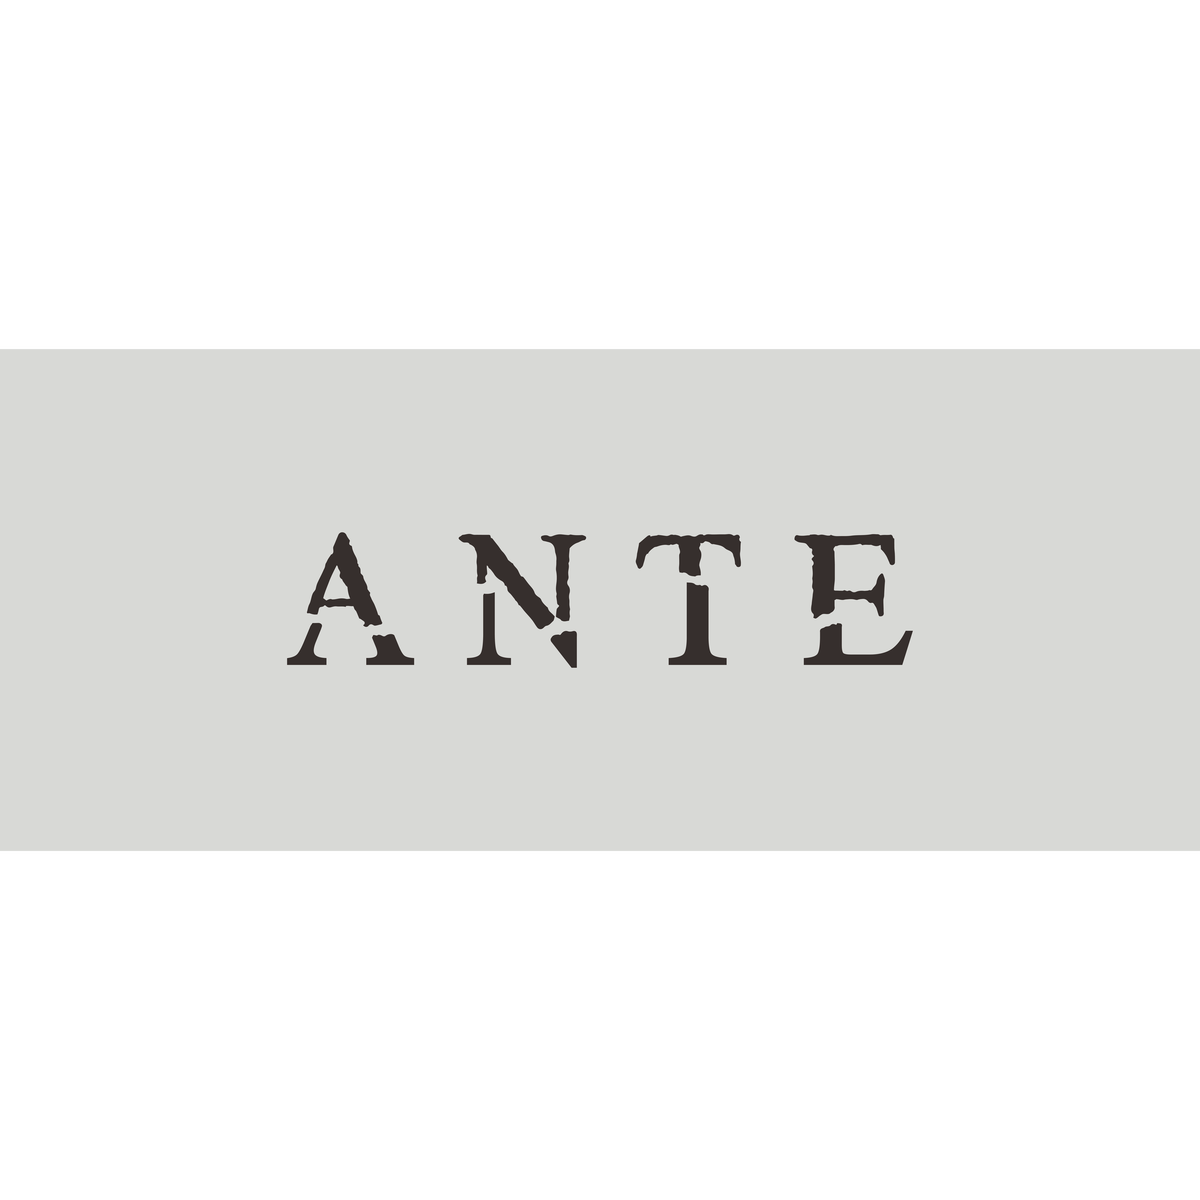 Ante